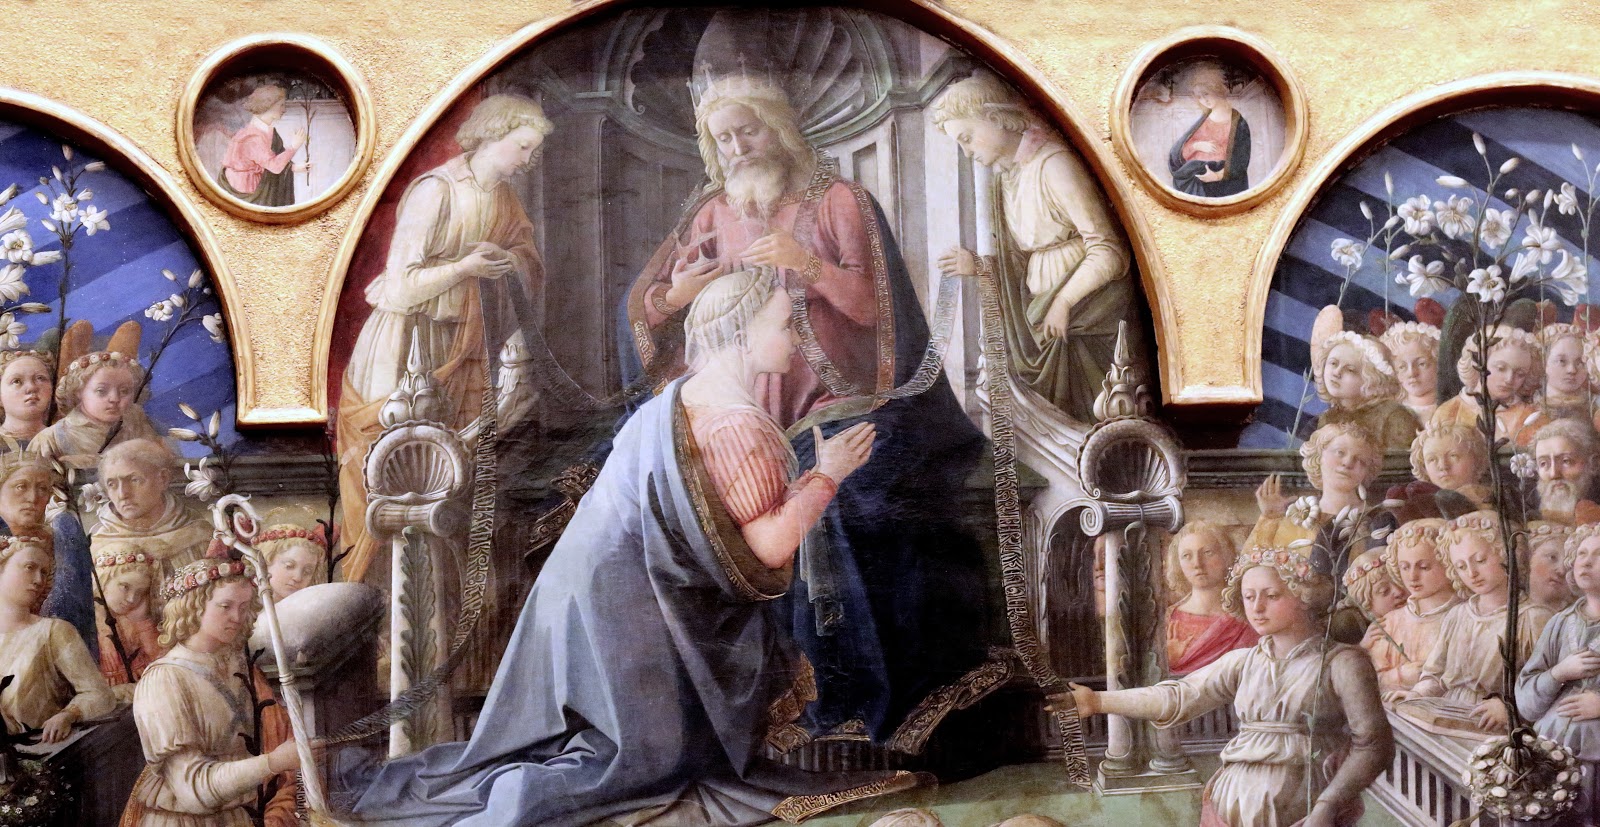 Filippino+Lippi-1457-1504 (122).jpg